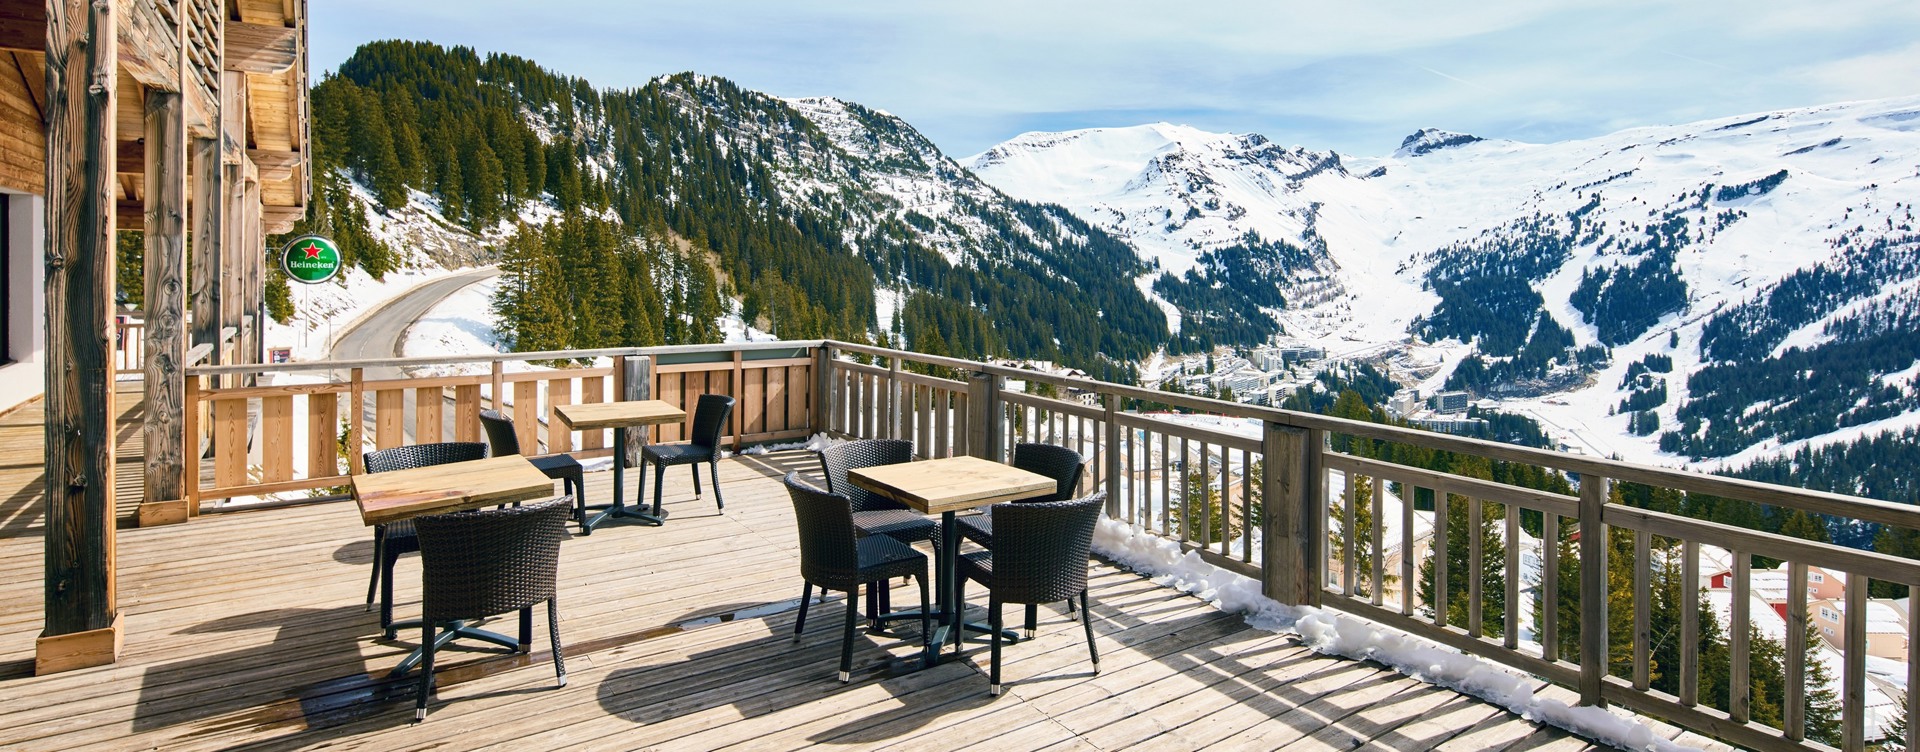 Placer culinario con vistas panorámicas
a los Alpes franceses